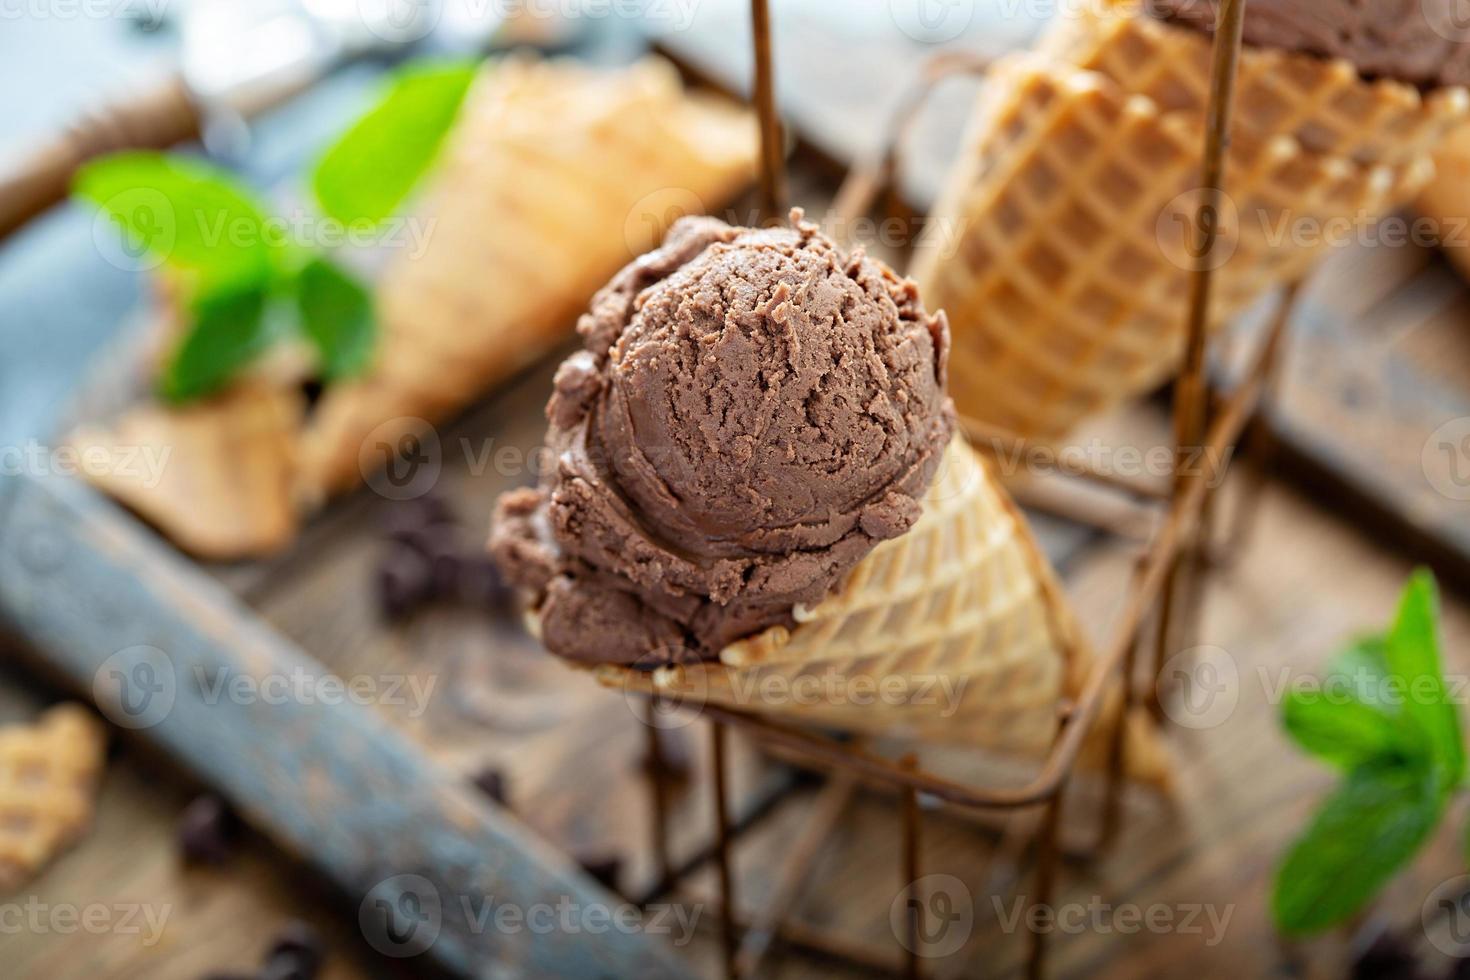 sorvete de chocolate com menta em cones de waffle foto